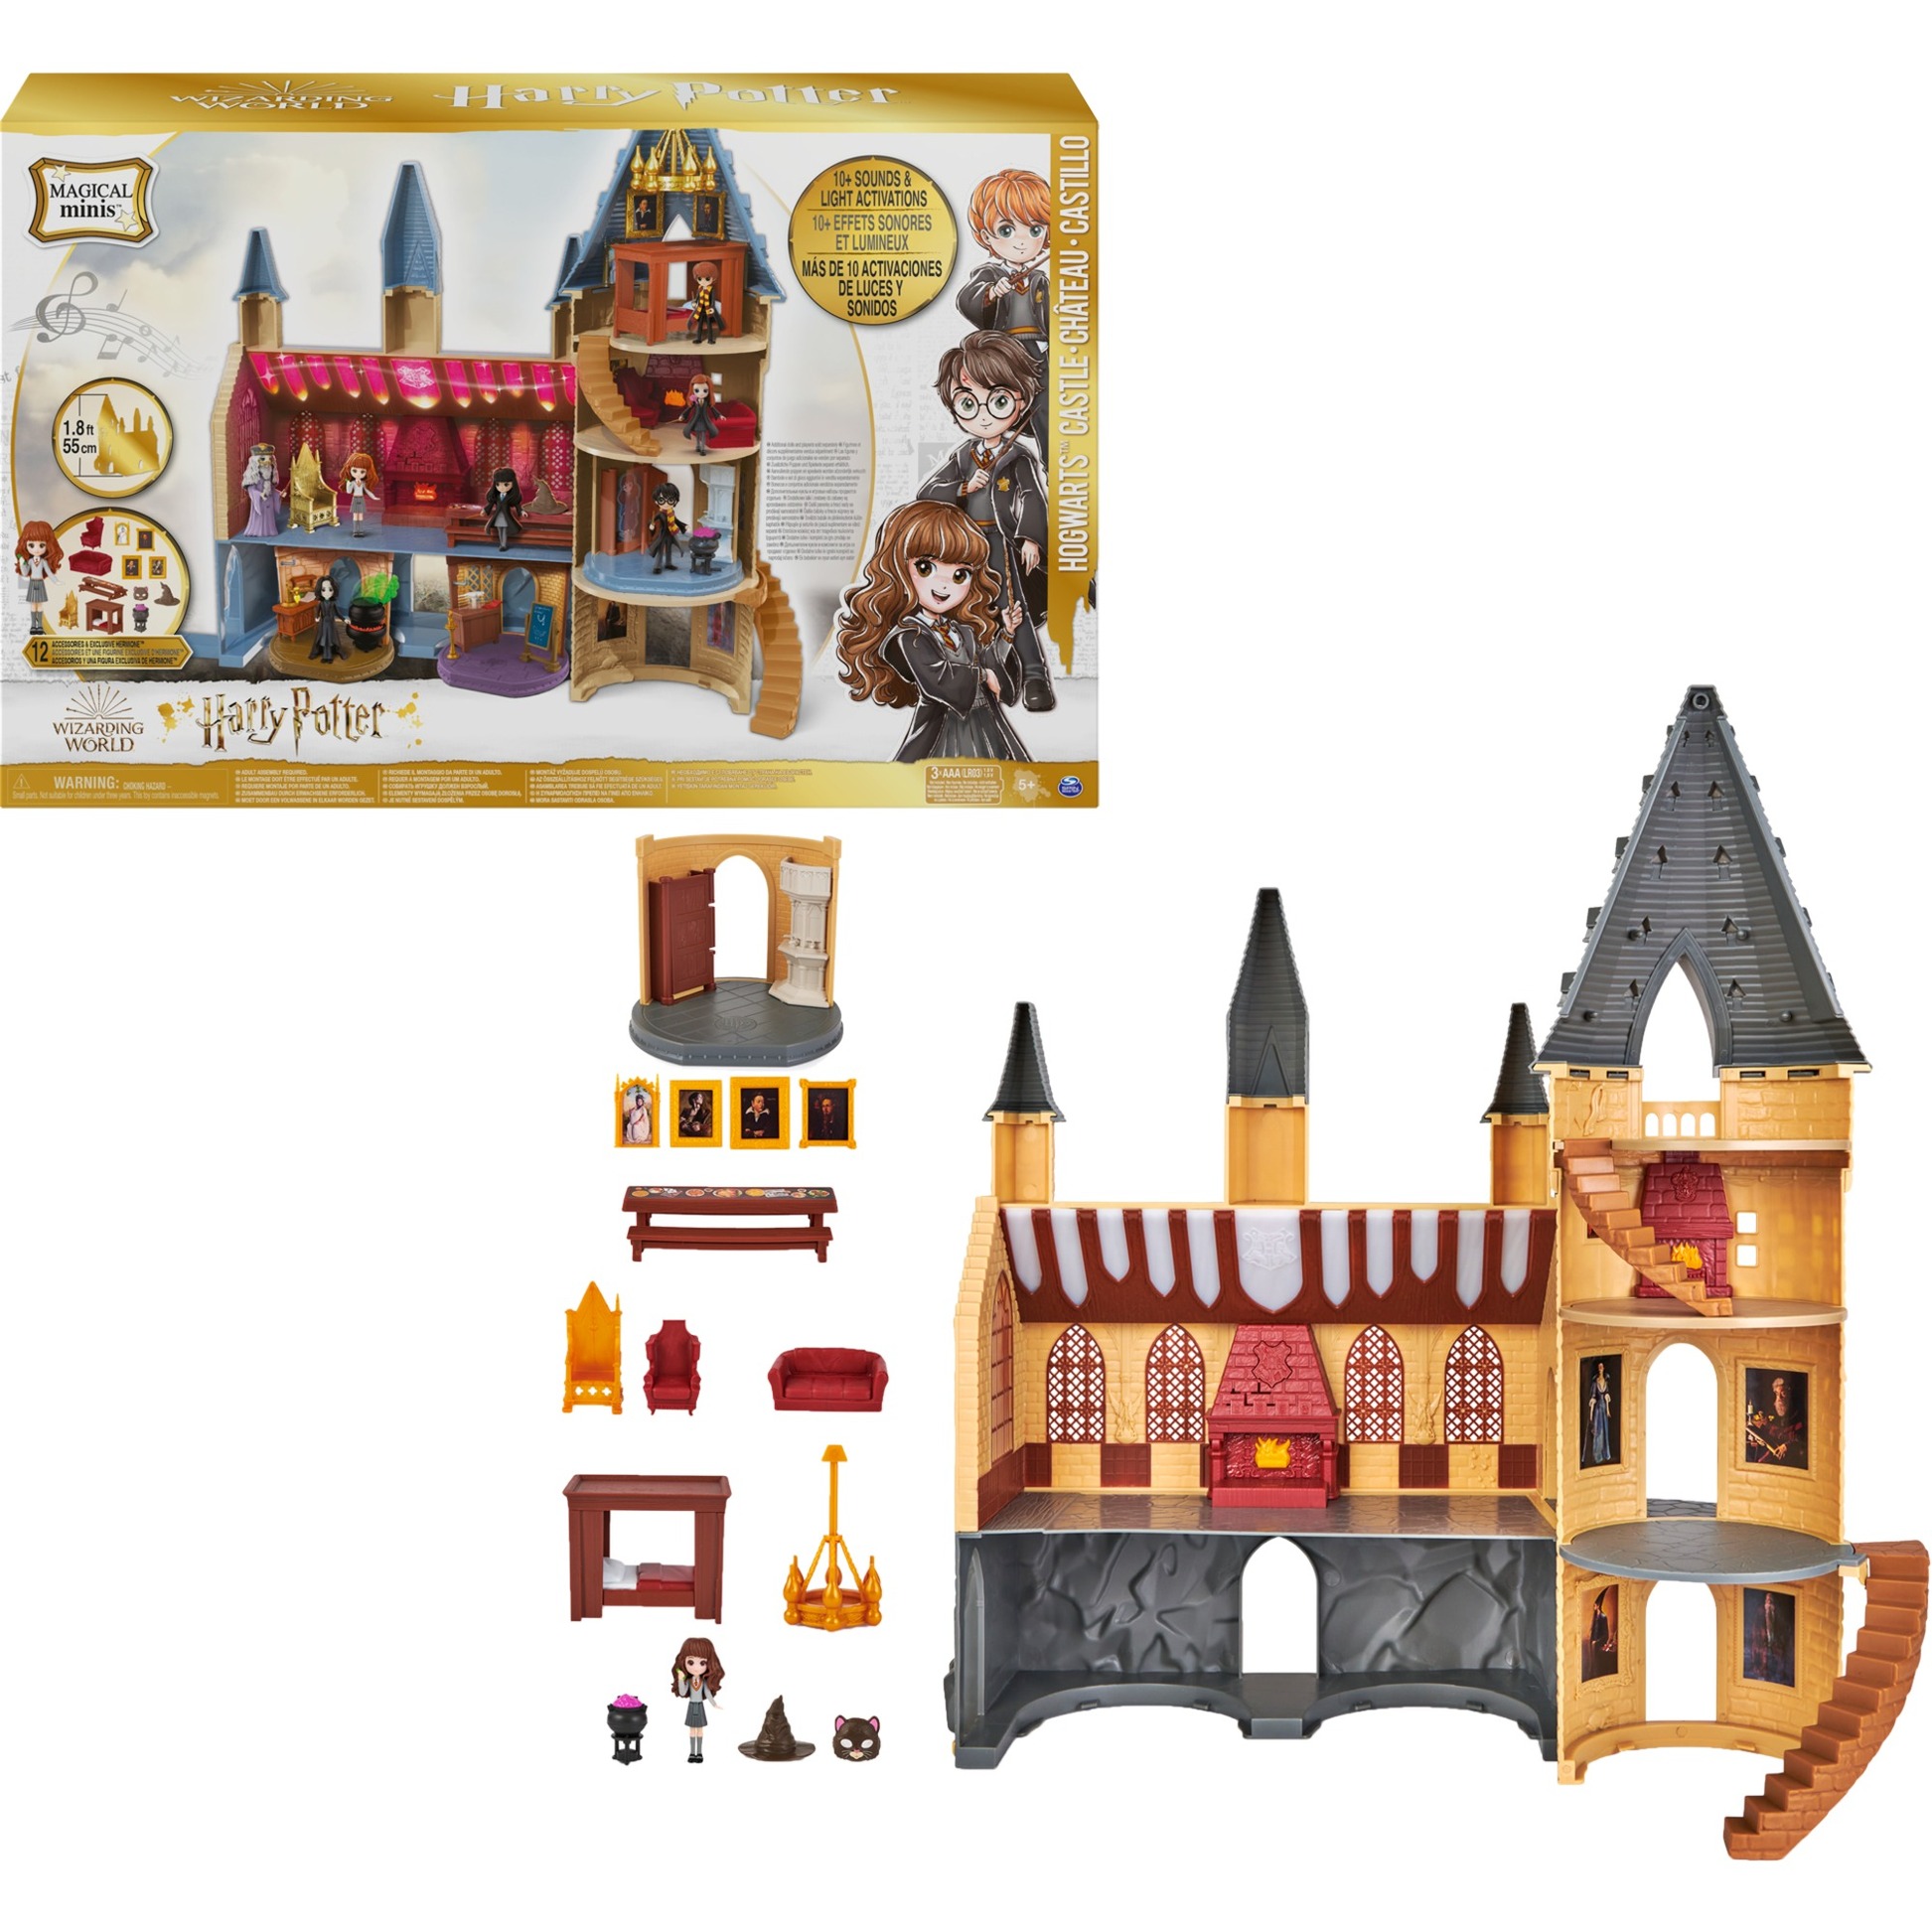 Wizarding World 6061842 Harry Potter - Hogwarts Schloss Spielset mit exklusiver Hermine Granger Sammelfigur und viel Zubehör